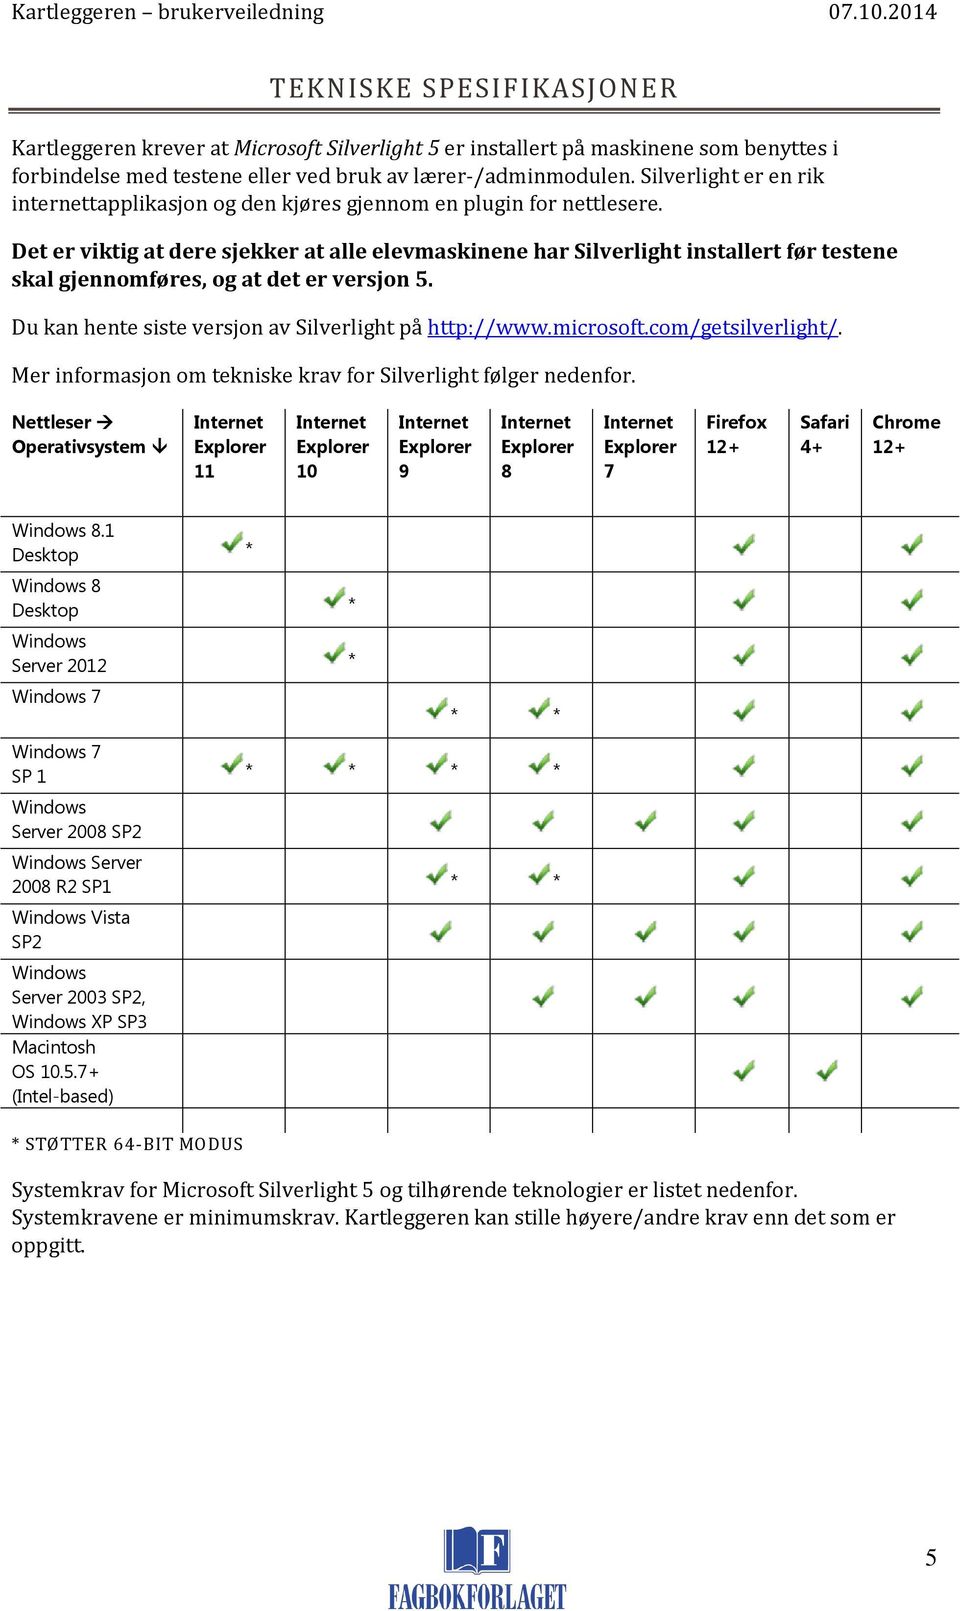 Det er viktig at dere sjekker at alle elevmaskinene har Silverlight installert før testene skal gjennomføres, og at det er versjon 5. Du kan hente siste versjon av Silverlight på http://www.microsoft.